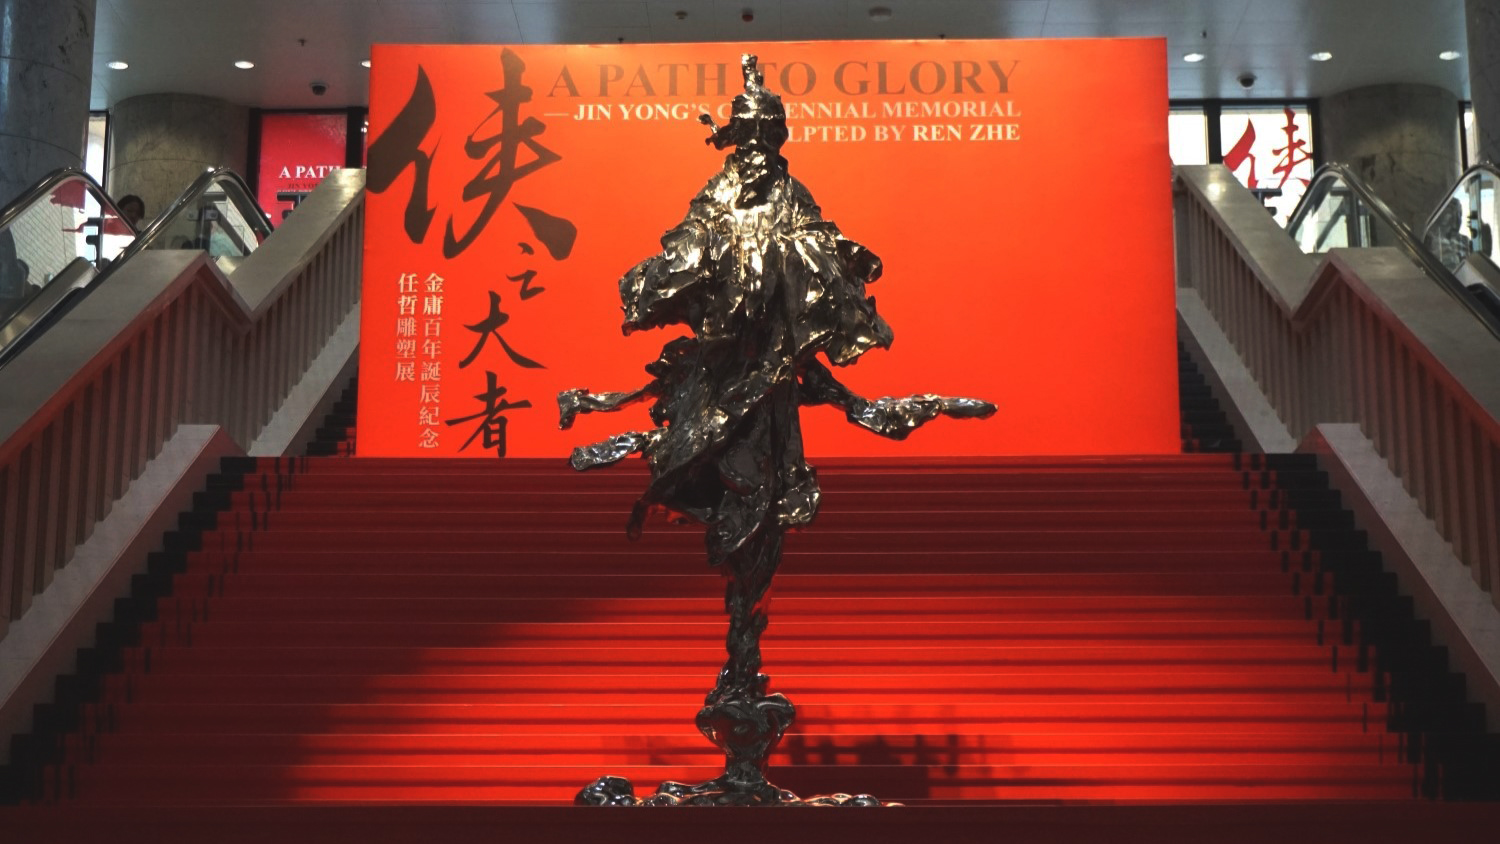 香港文化博物館辦任哲雕塑展 逾20尊金庸小說人物雕塑驚艶亮相